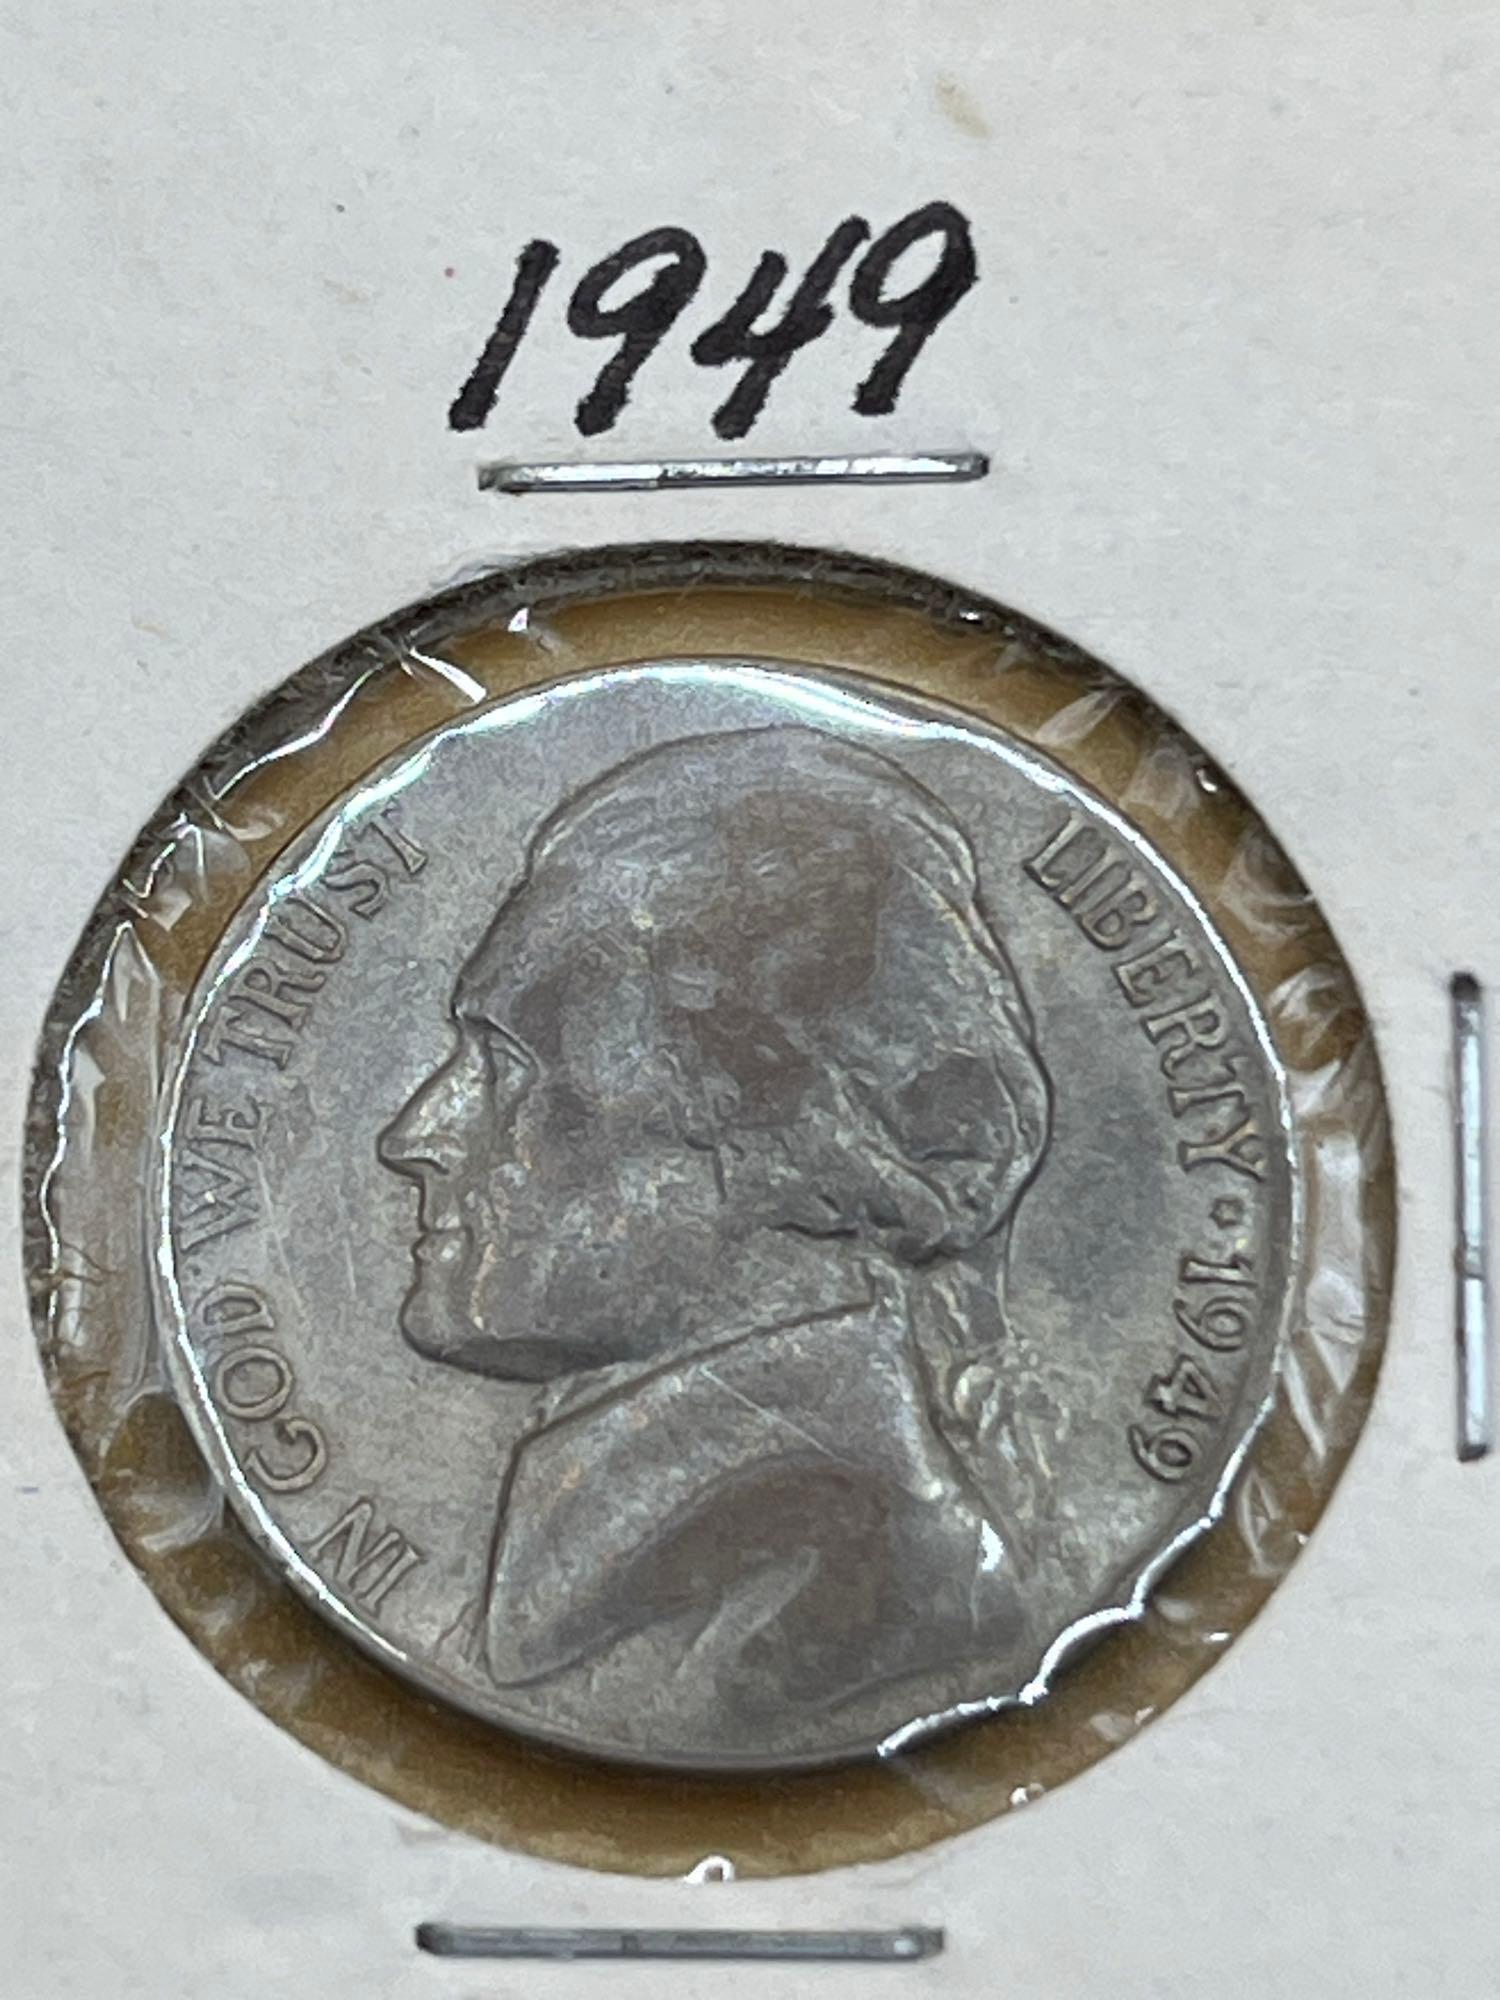 Nickel, 1946, 1947, 1948, 1949. (4 Total)